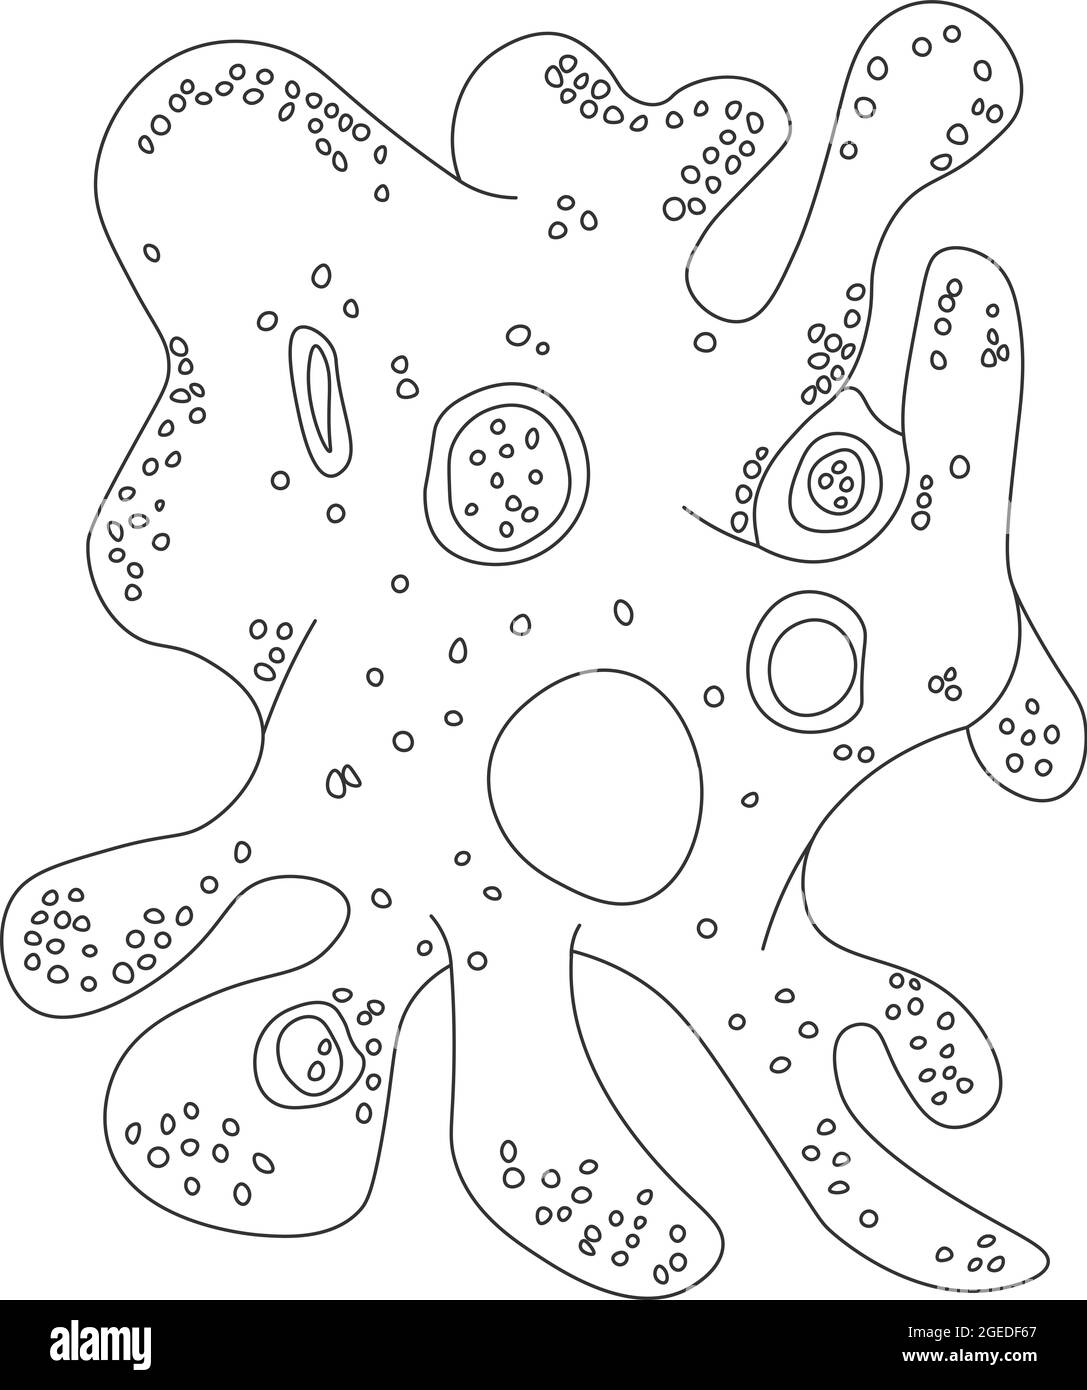 Amöben-Proteus. Vektordarstellung eines Mikroorganismus. Schwarz-weiße Konturdarstellung. Stockfoto